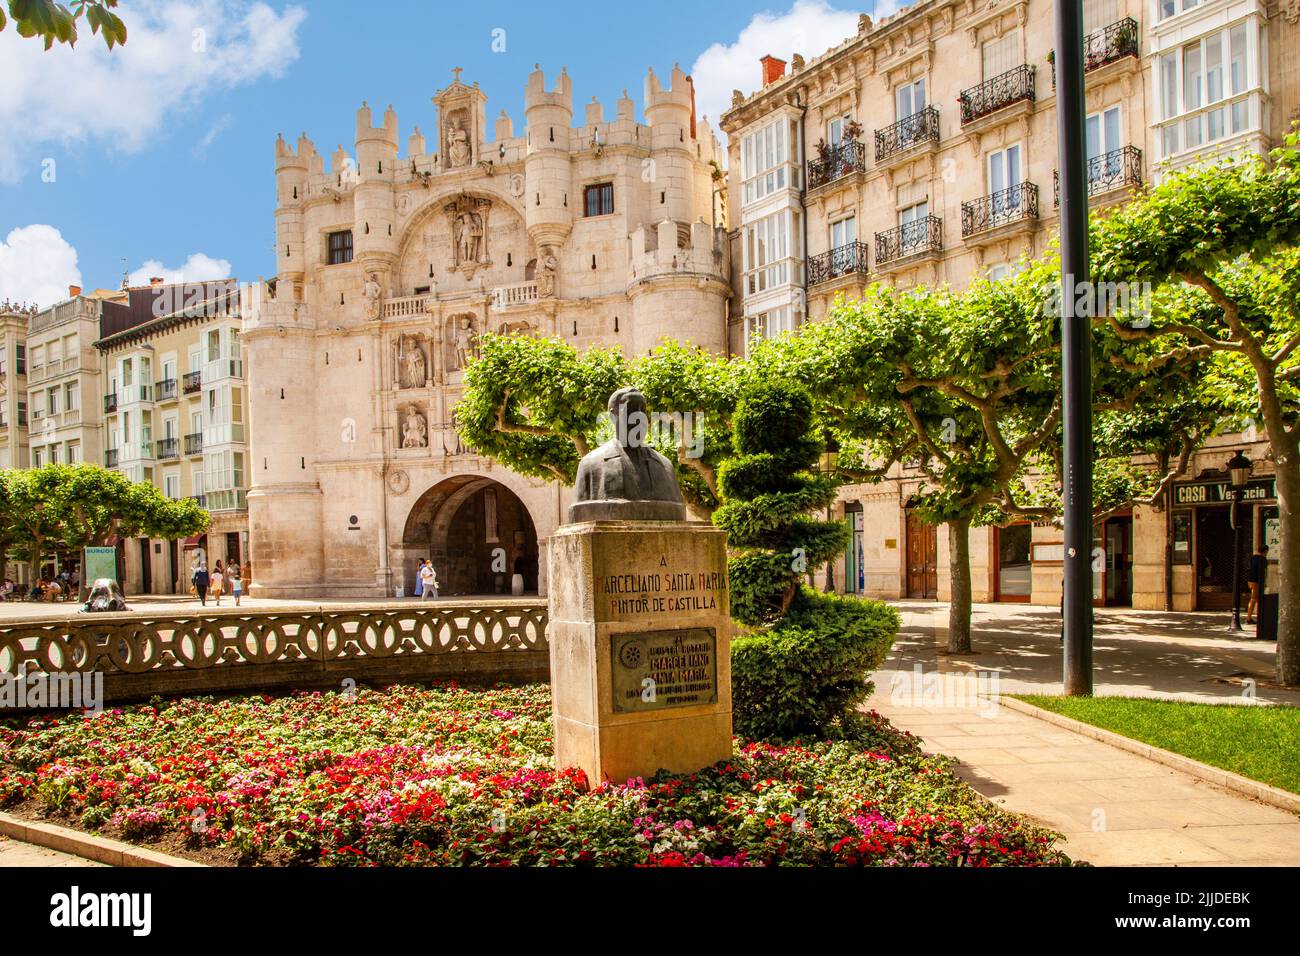 Das Stadttor von Santa Maria, in der spanischen Stadt Burgos Spanien vom Burgos Park und den Gärten aus gesehen Stockfoto